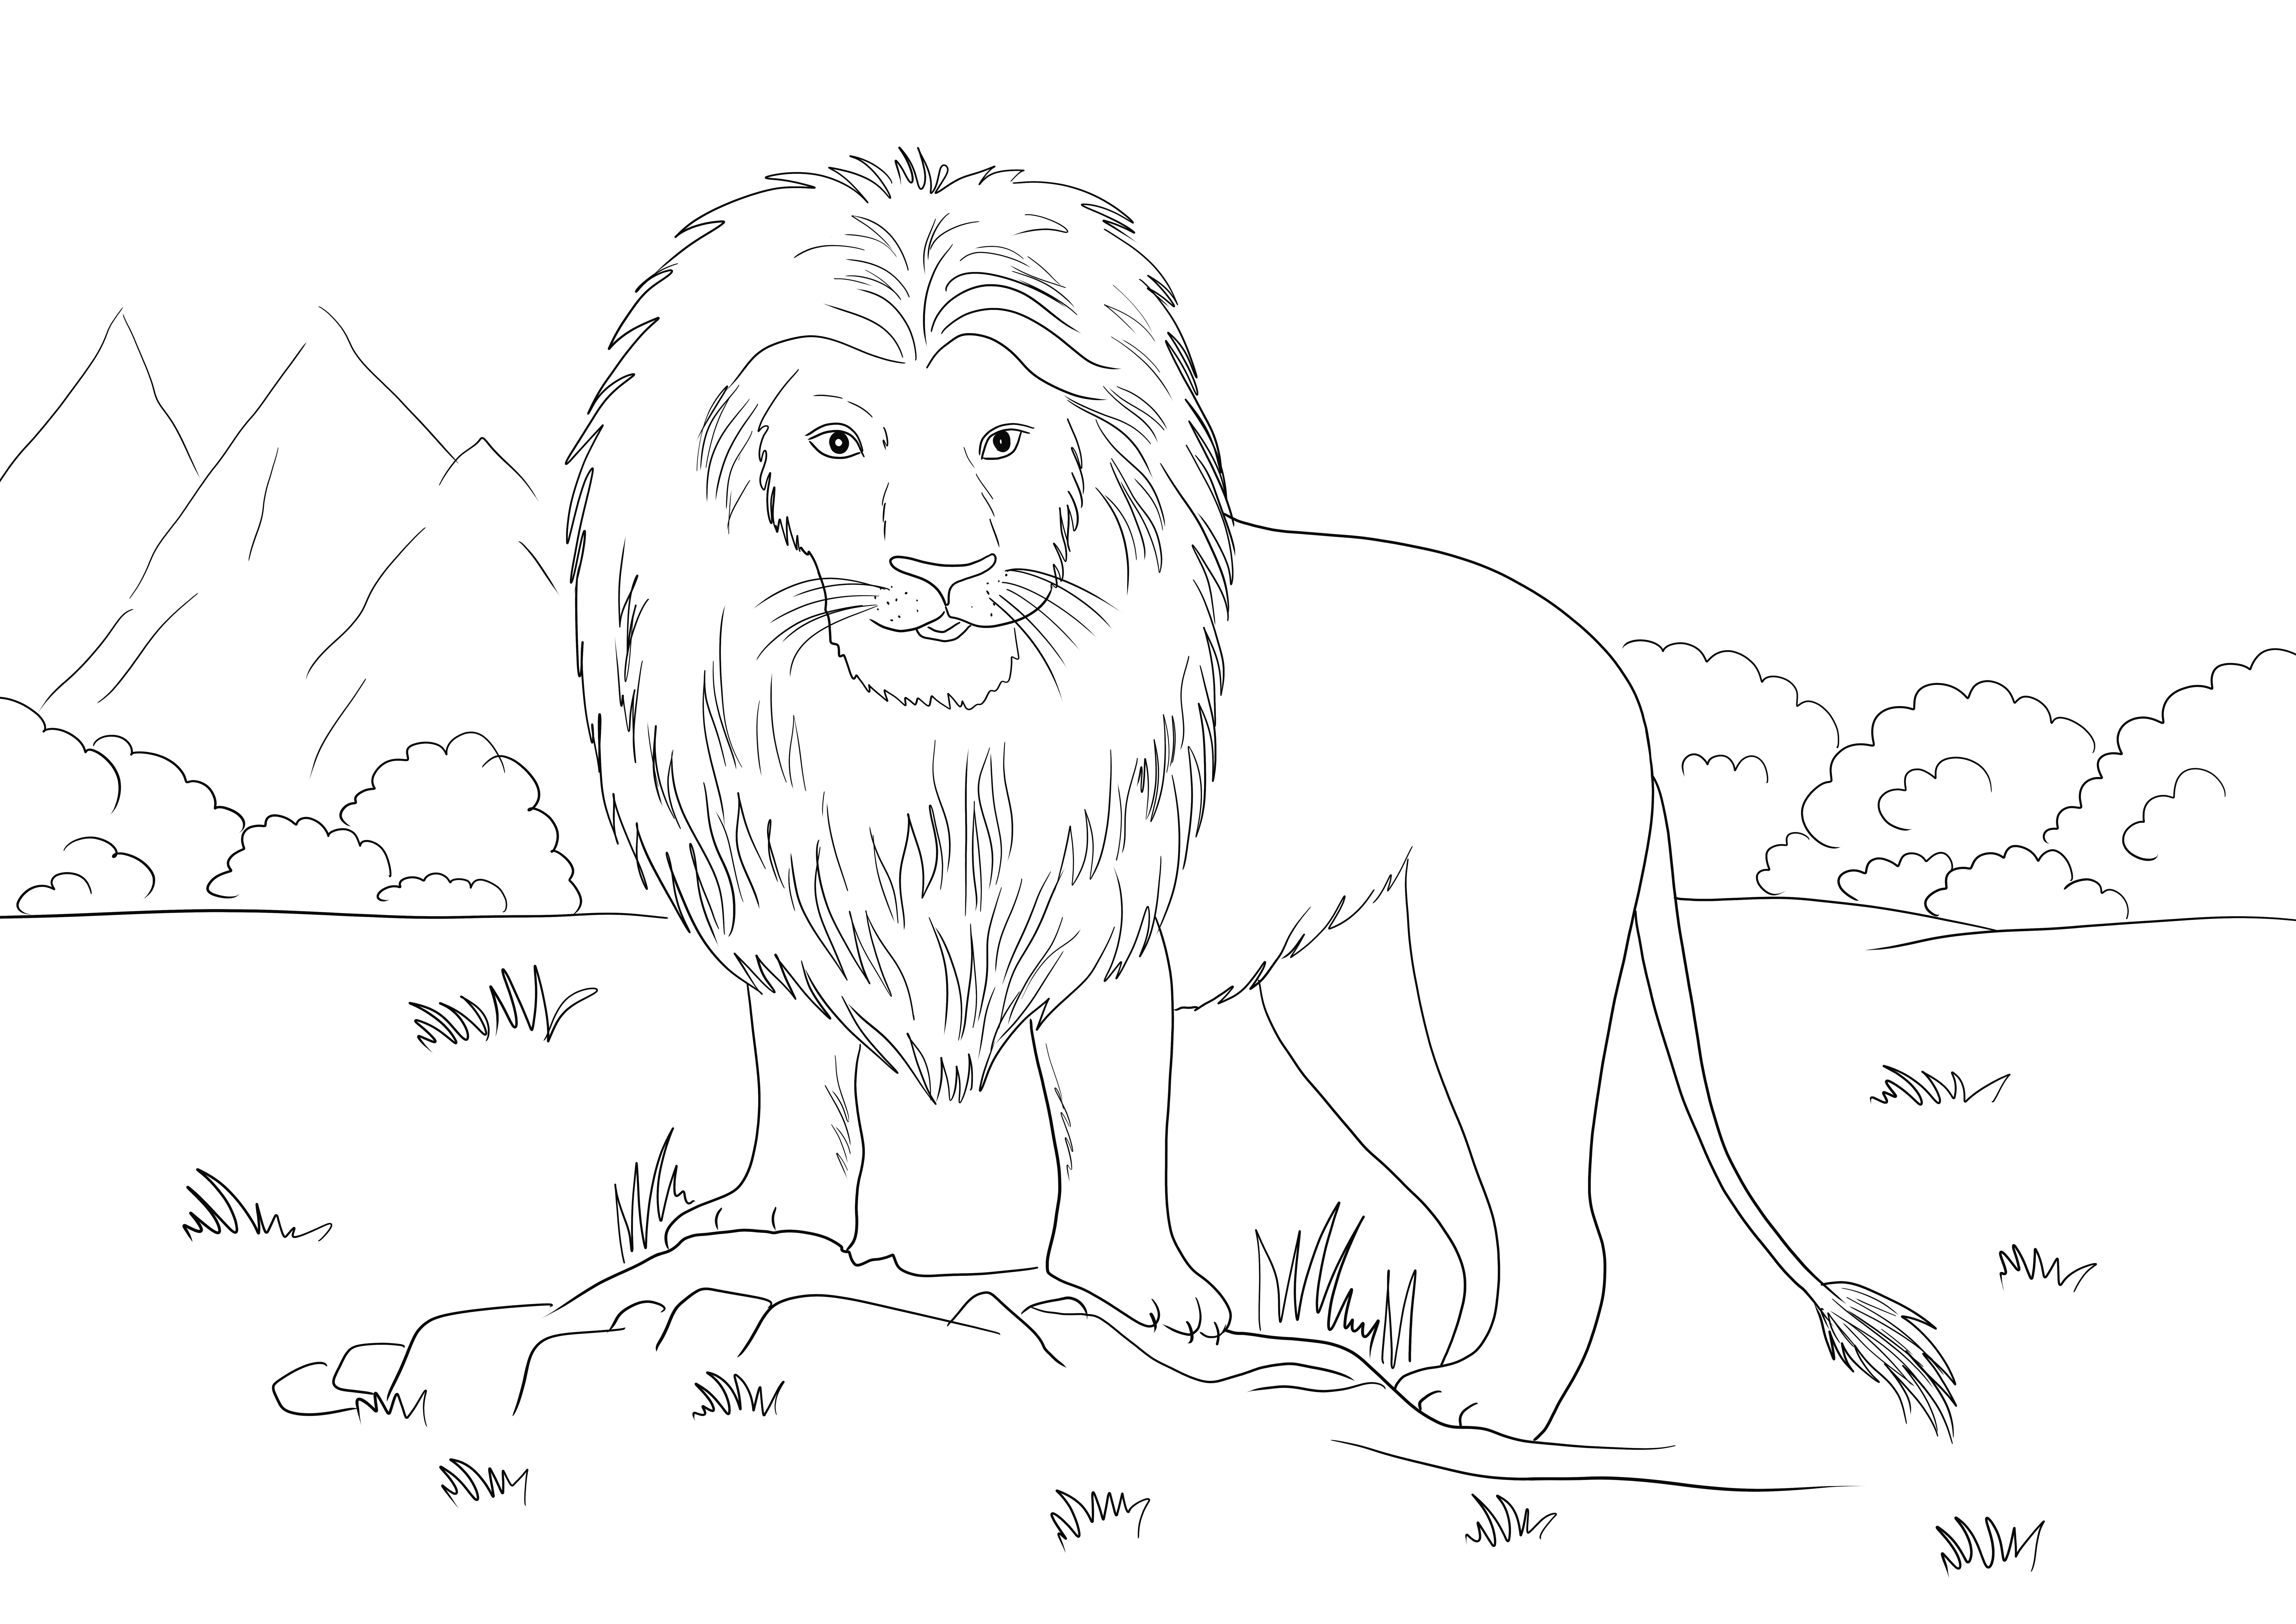 Leão africano grátis para imprimir e baixar para crianças de todas as idades